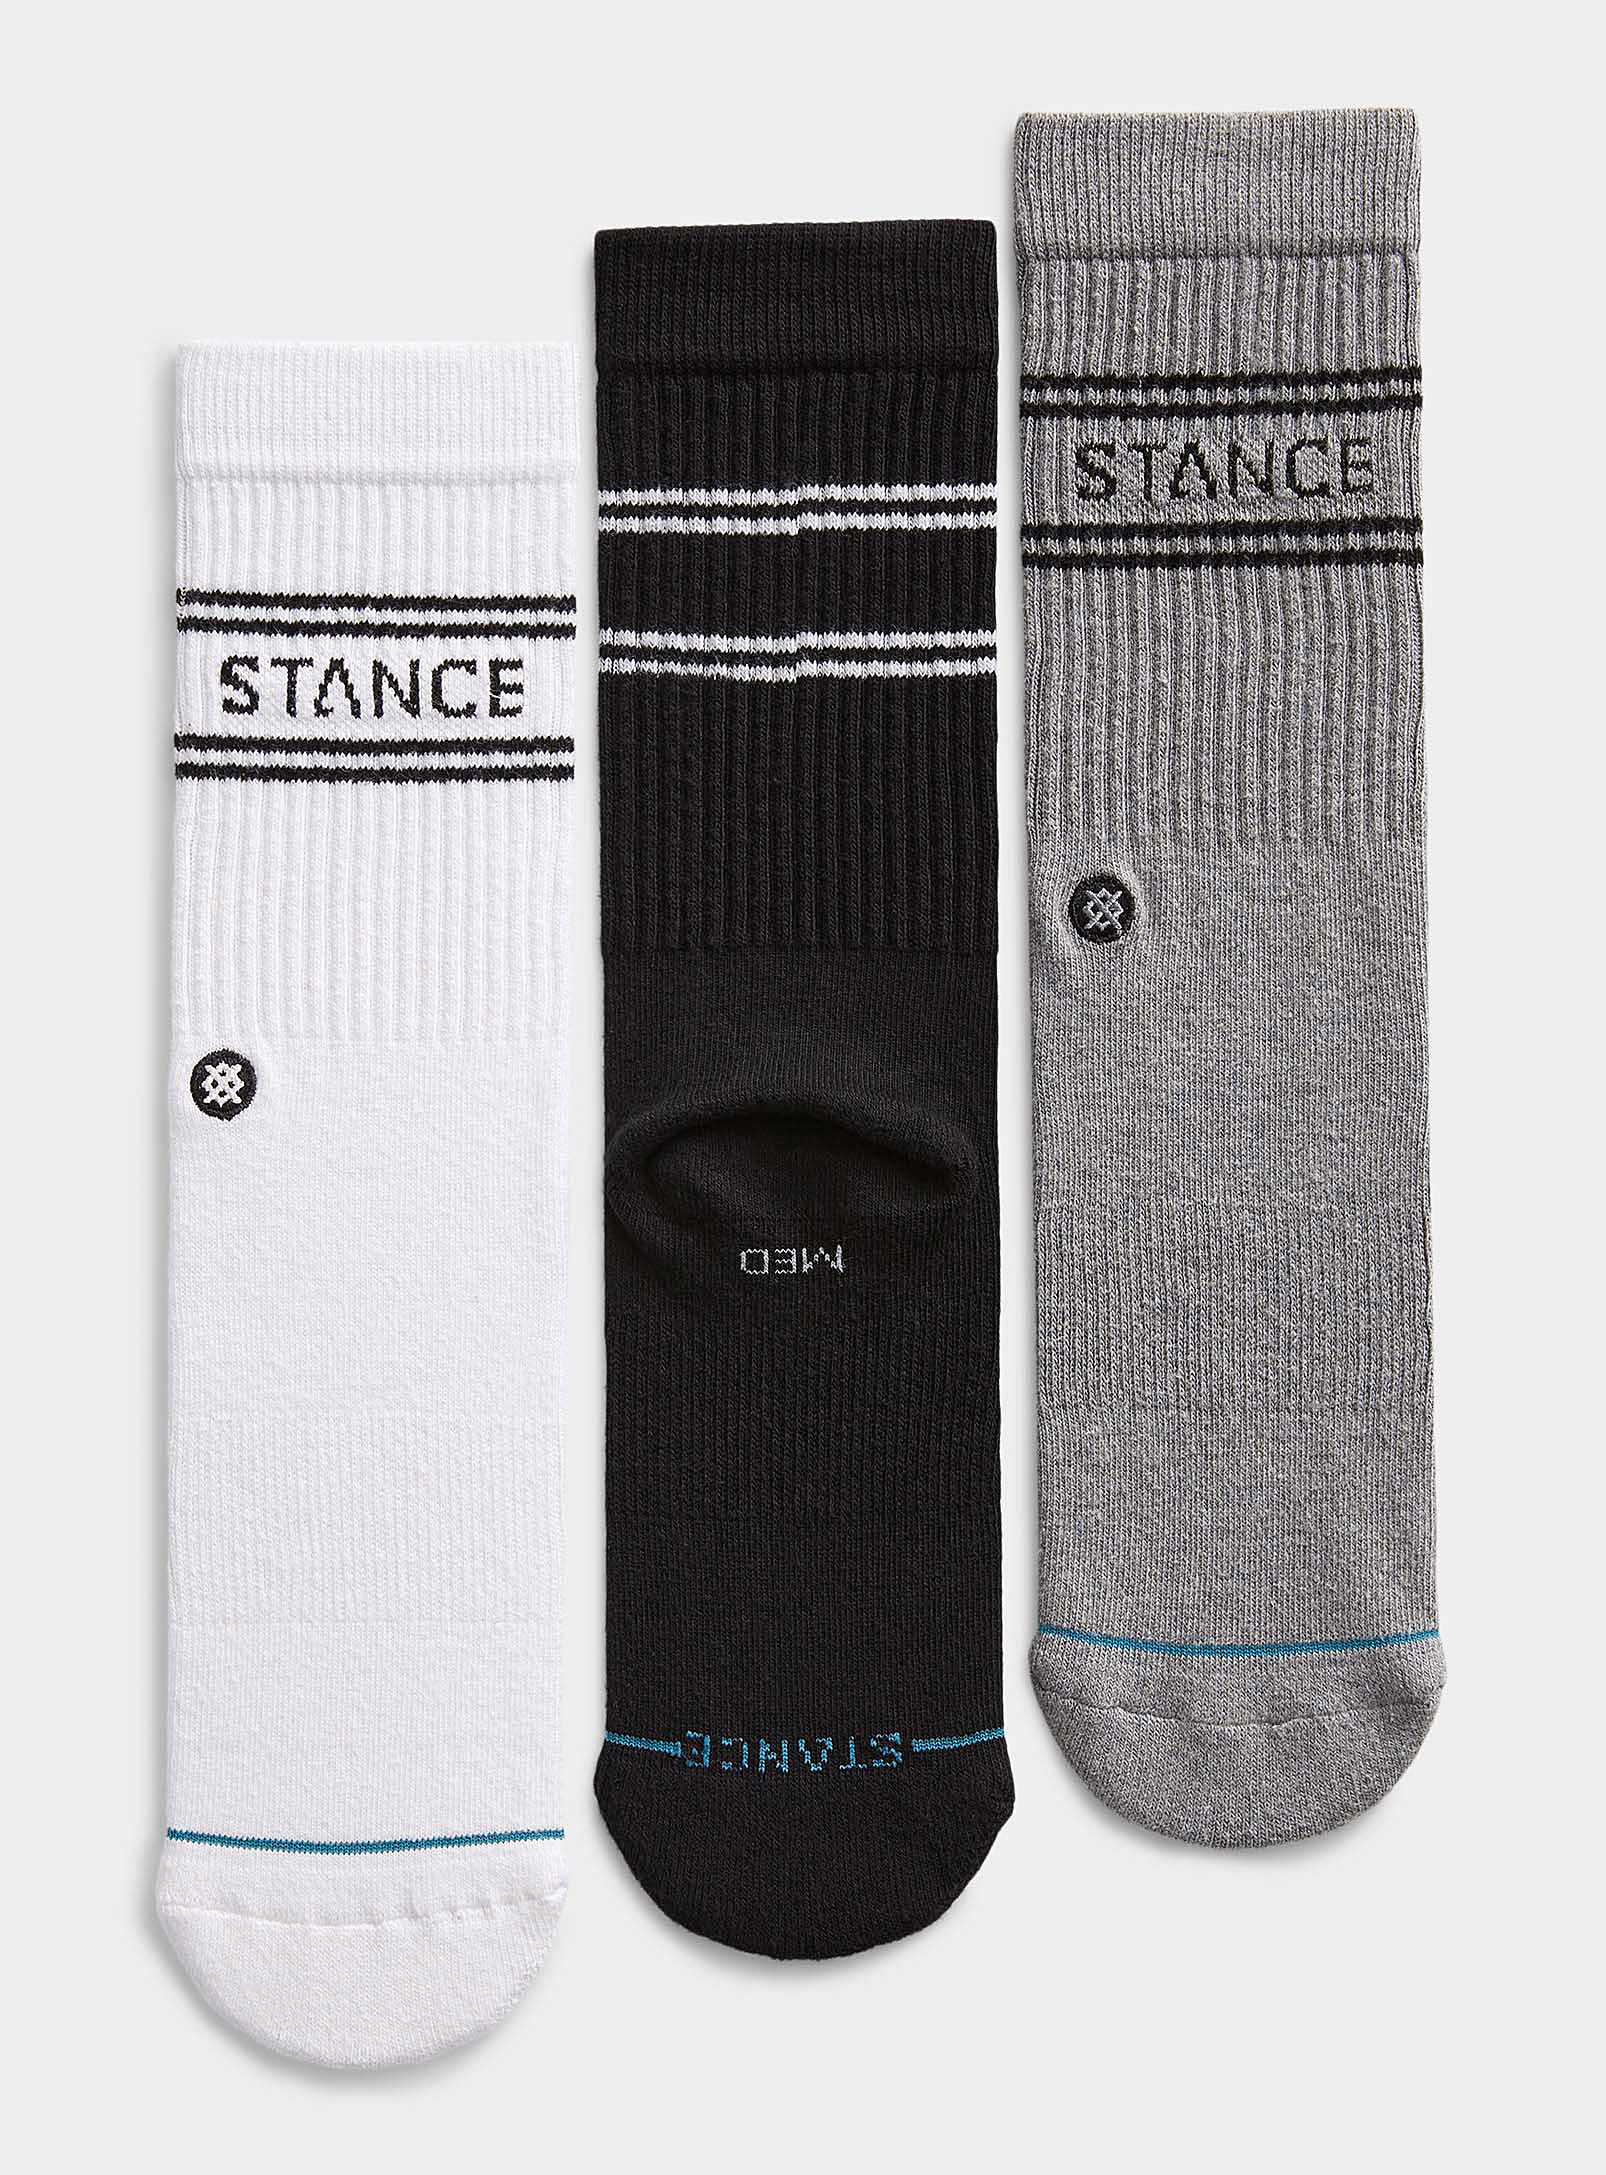 Stance Basic White 3 Pack Crew Socks